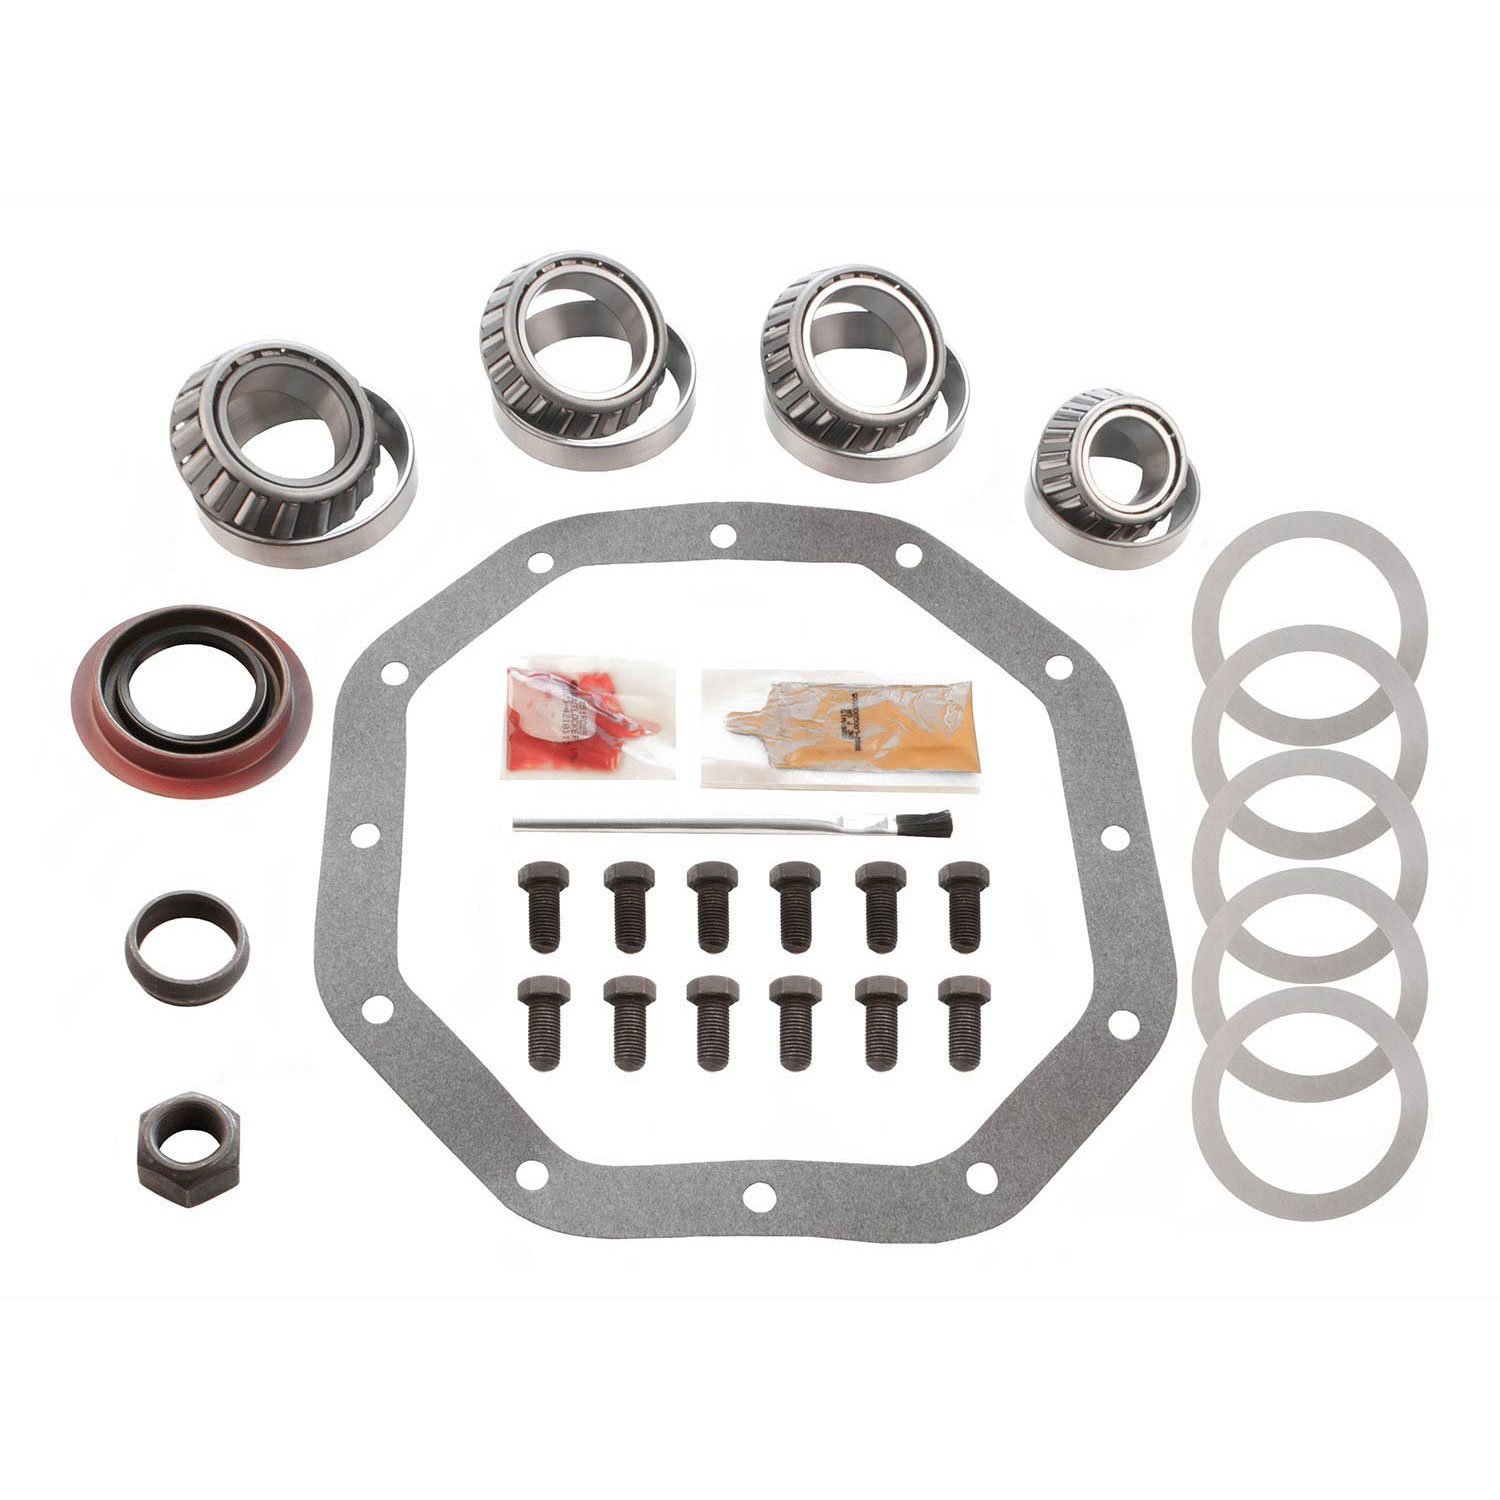 Differential Master Bearing Kit Chrysler 9.25 in. 12-bolt - Timken Bearings